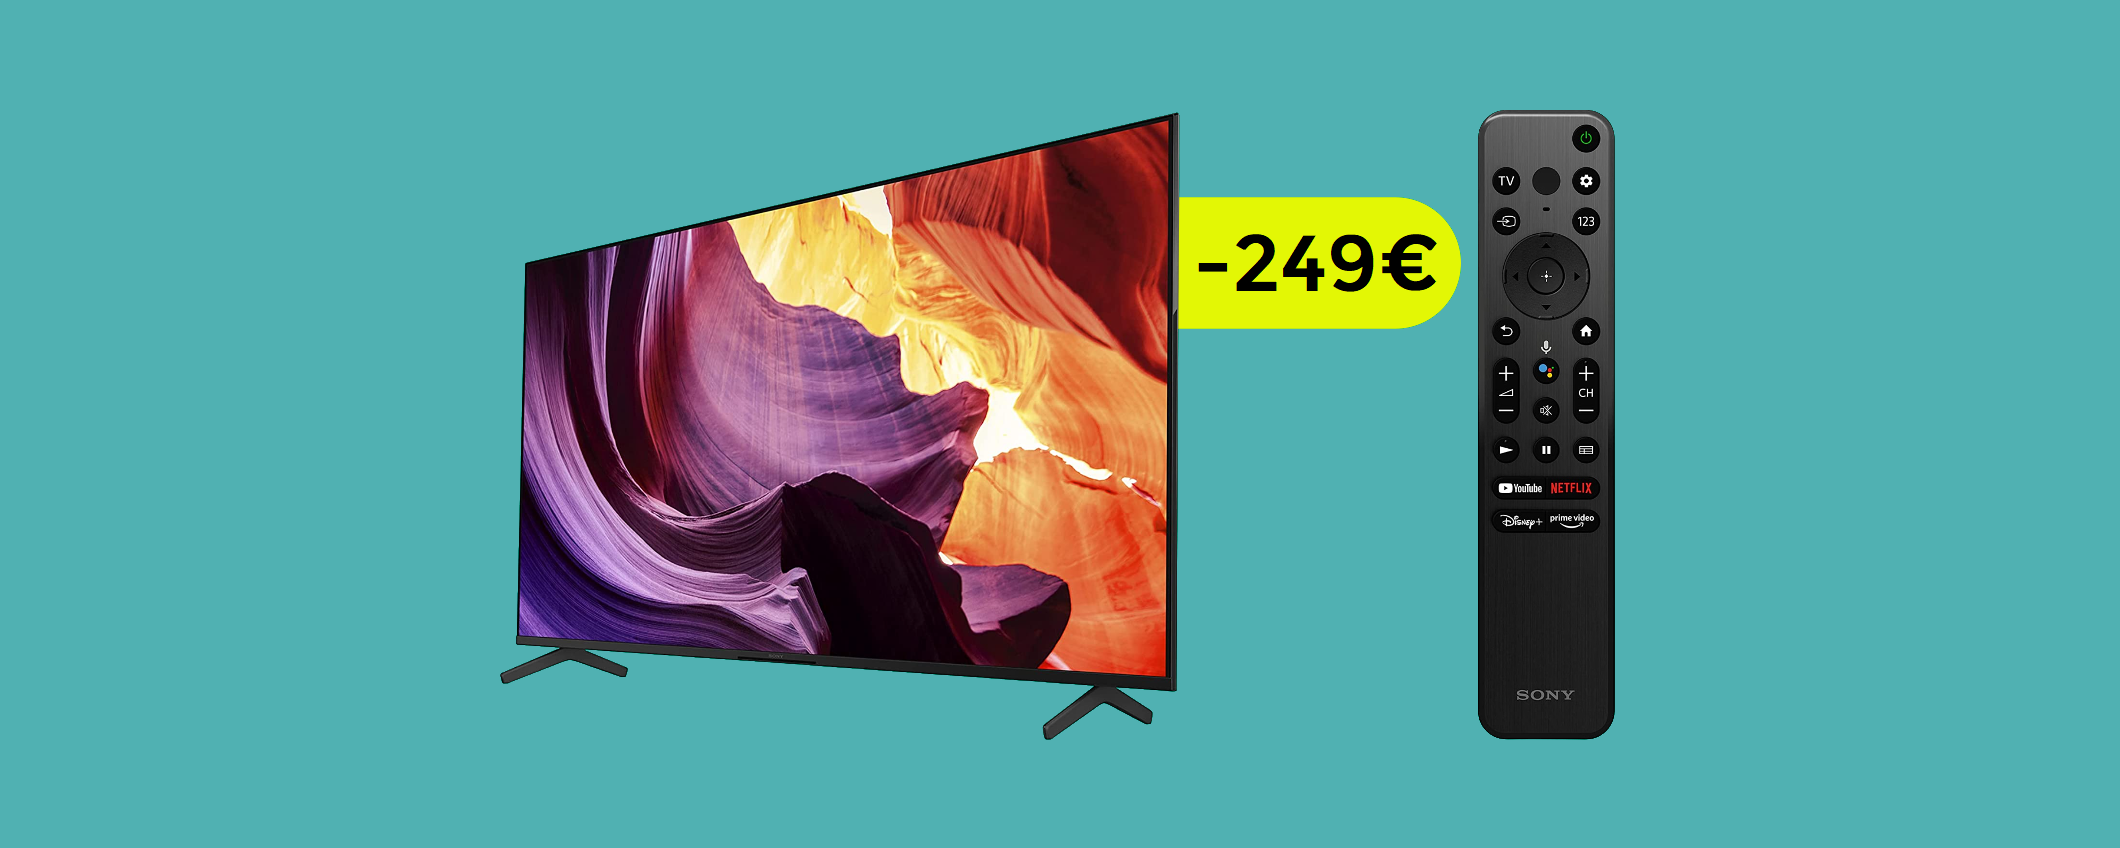 Smart TV 4K Sony Bravia 50'': imperdibile con il MAXI SCONTO (-249€)